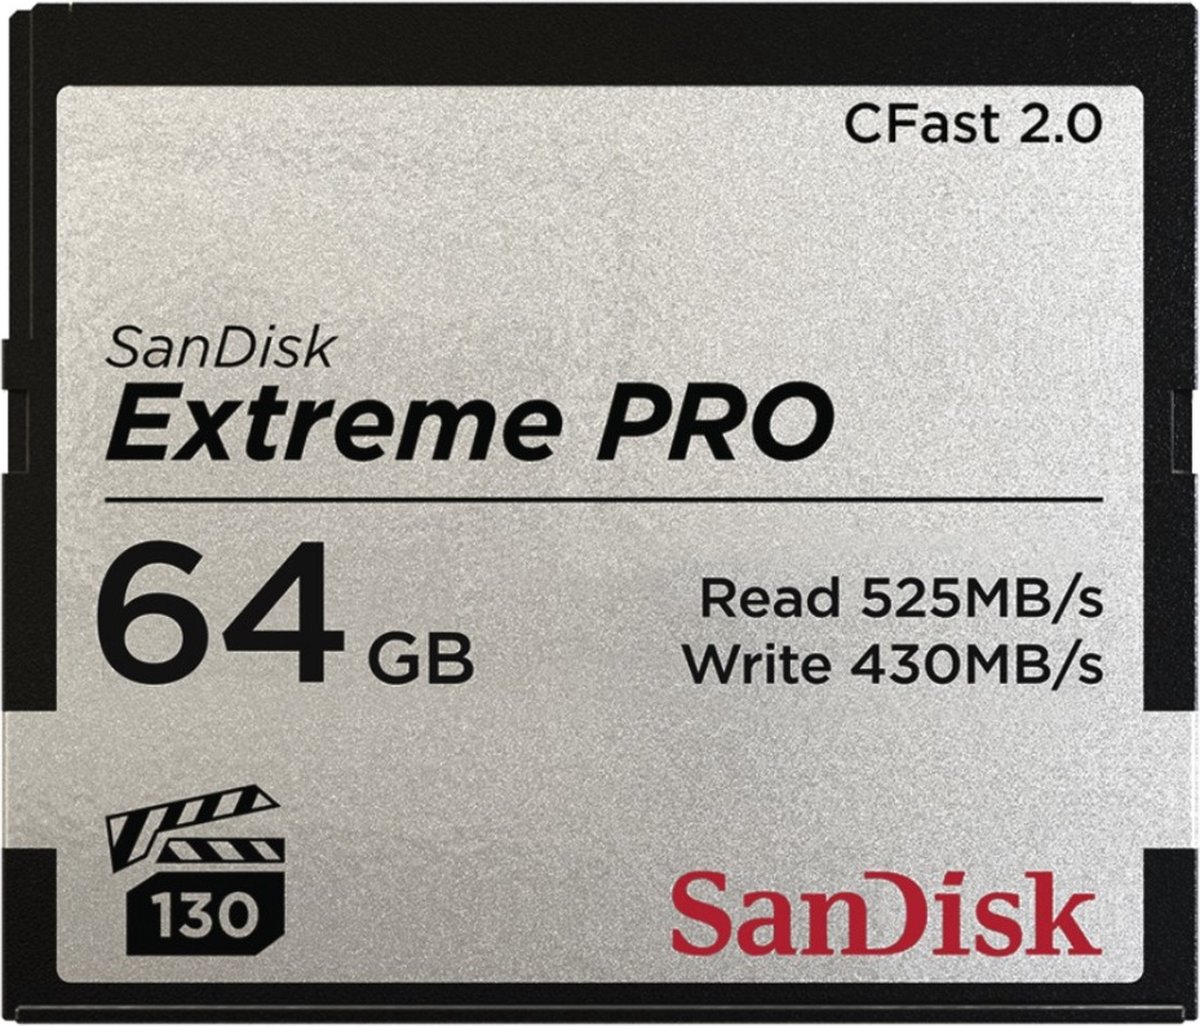 Sandisk Extreme Pro CFAST 2.0 64GB 525MB/s VPG130 - SanDisk